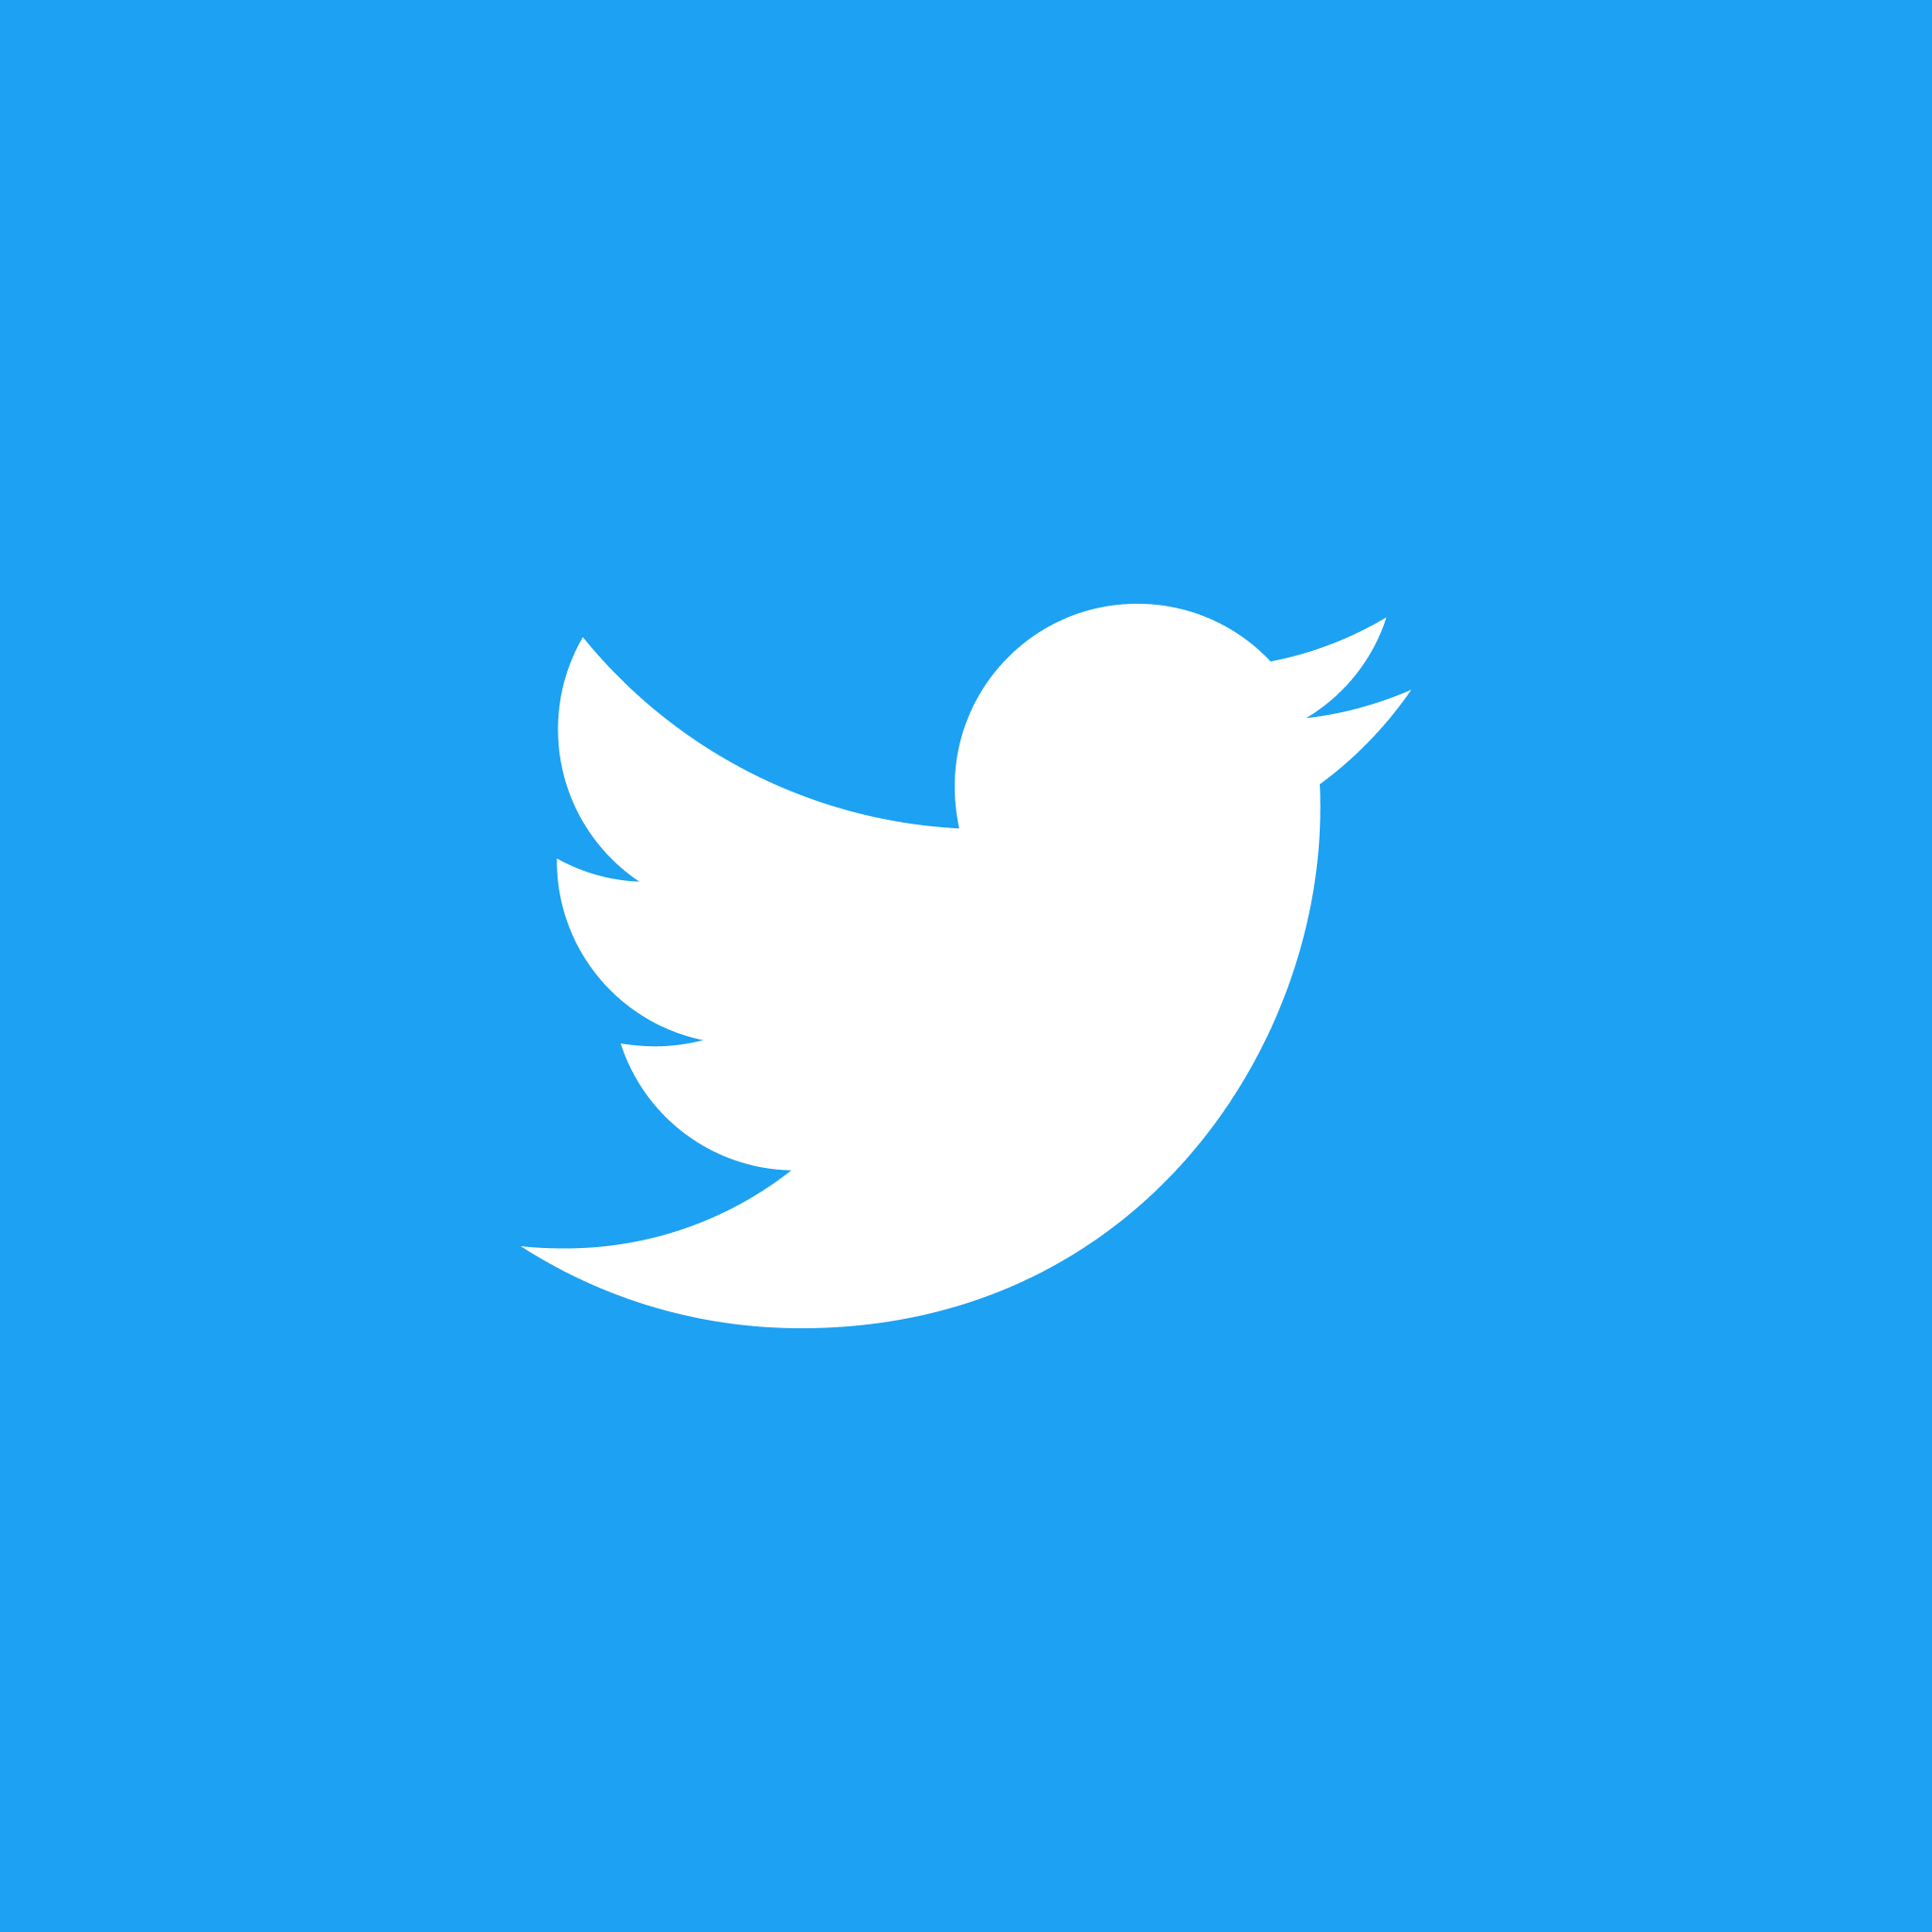 Imagem nº 1 de Como alterar o ícone do Twitter da marca 'X' para o pássaro azul